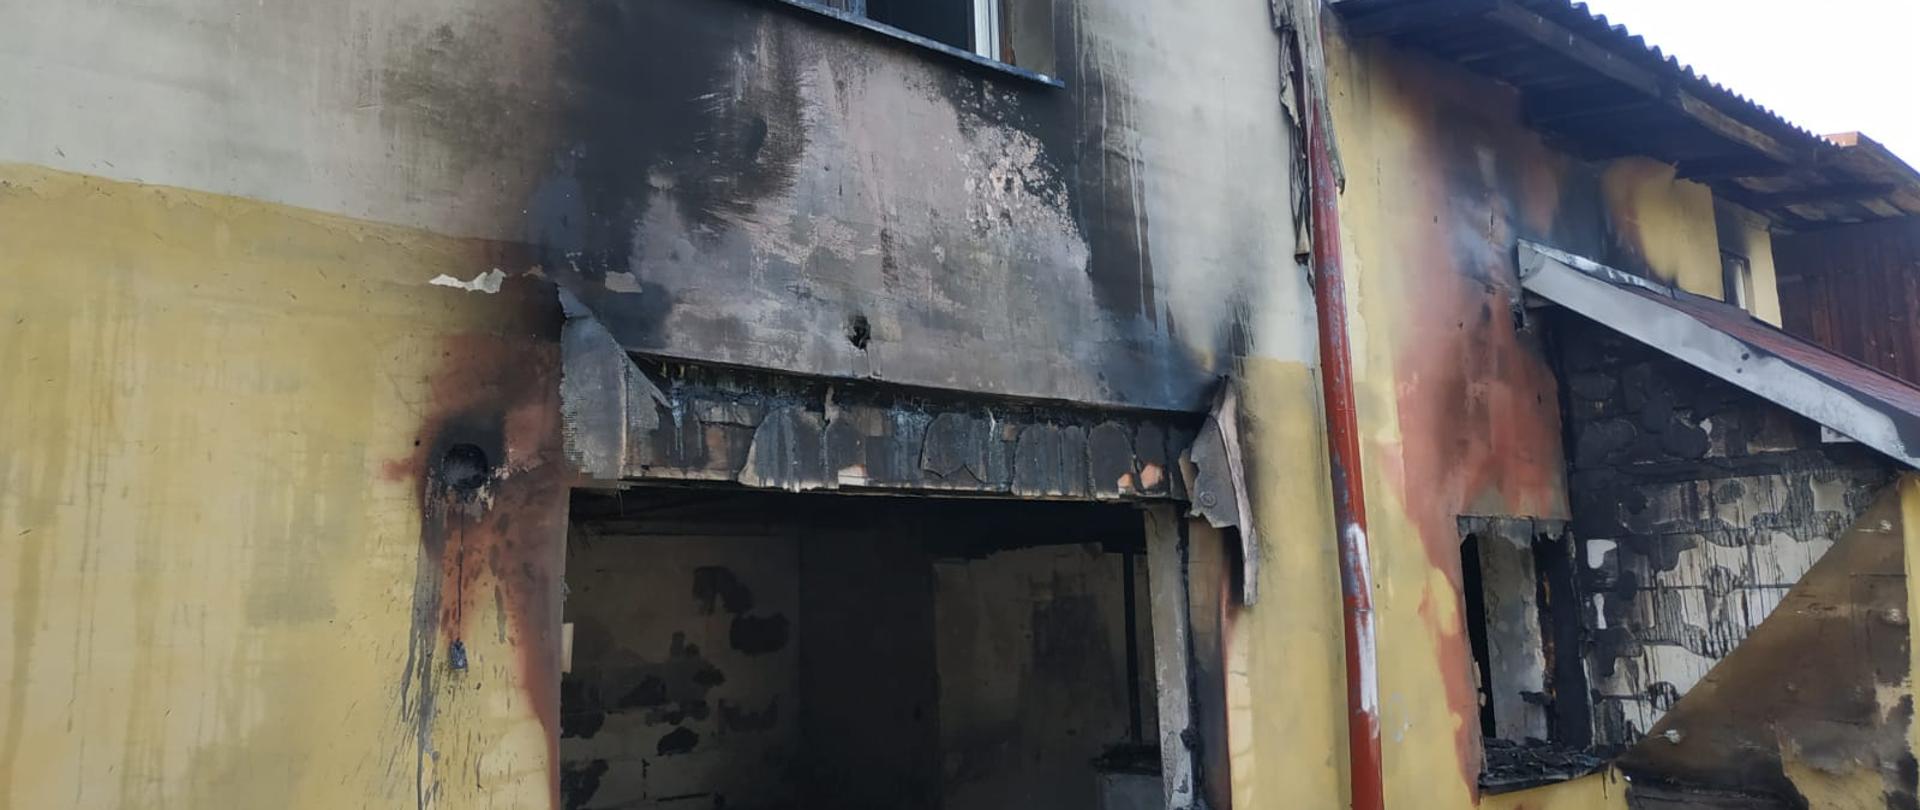 Zdjęcie przedstawia ścianę zewnętrzną spalonej oficyny. Widać zniszczone otwory okienne oraz okopcony tynk.